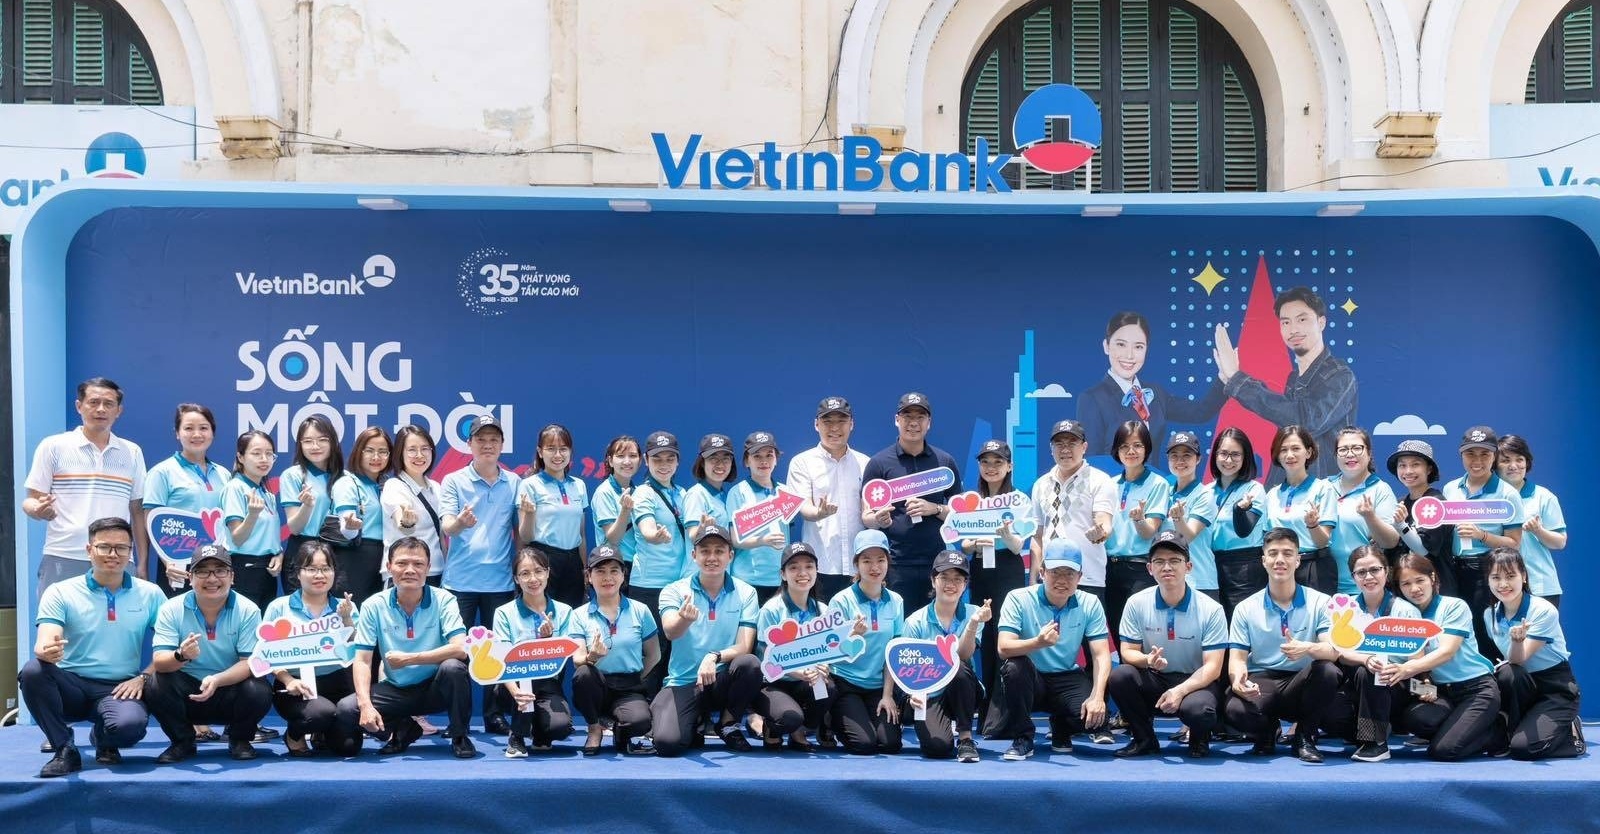 Cơ hội tham gia “Show của Đen” với 100 vé miễn phí tại chương trình của VietinBank